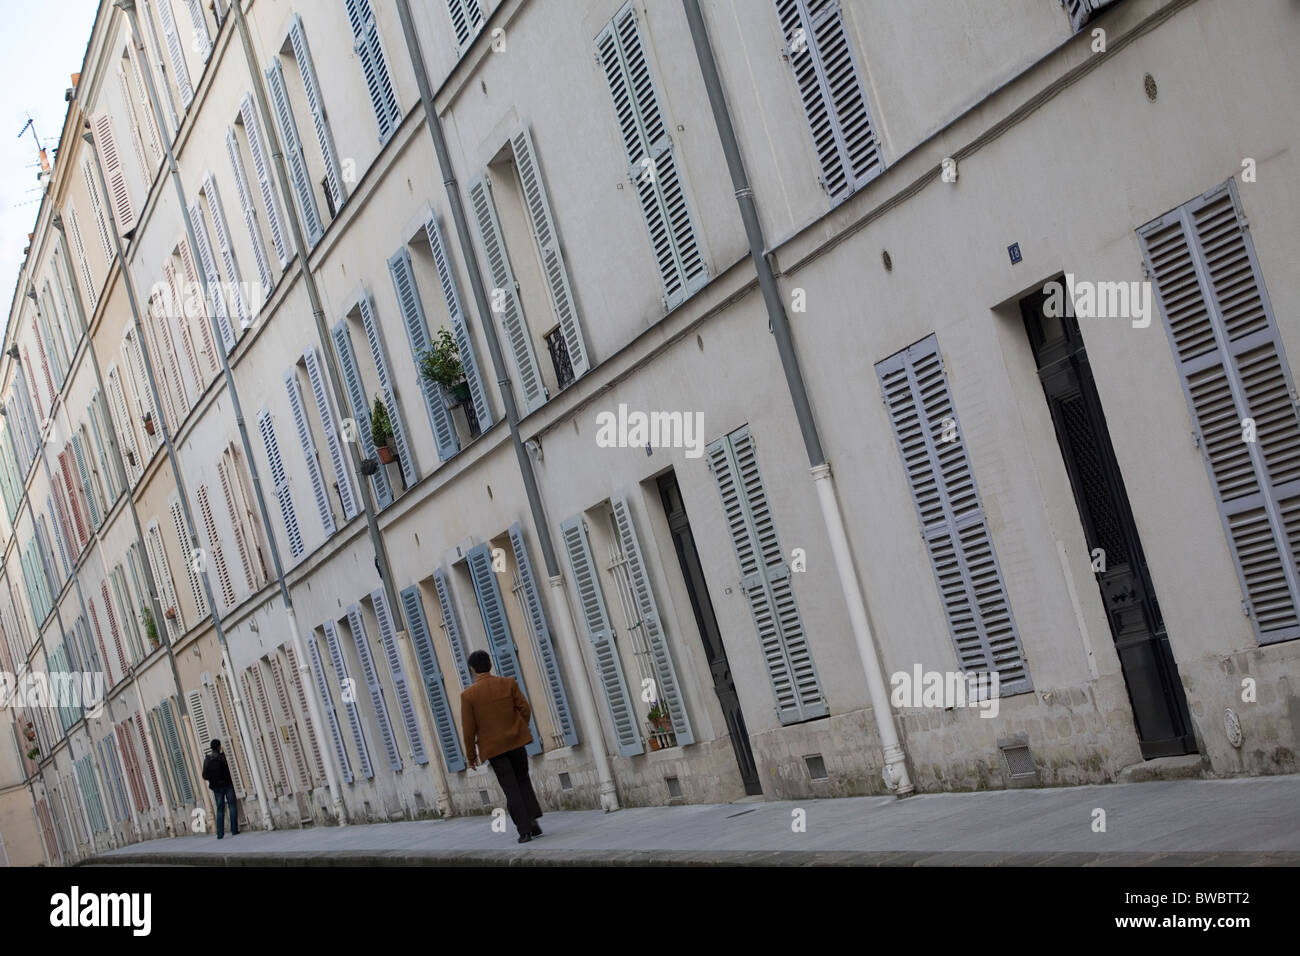 Straße in der Jean-Luc Godard-Film "Bout de Souffle" vorgestellt Stockfoto